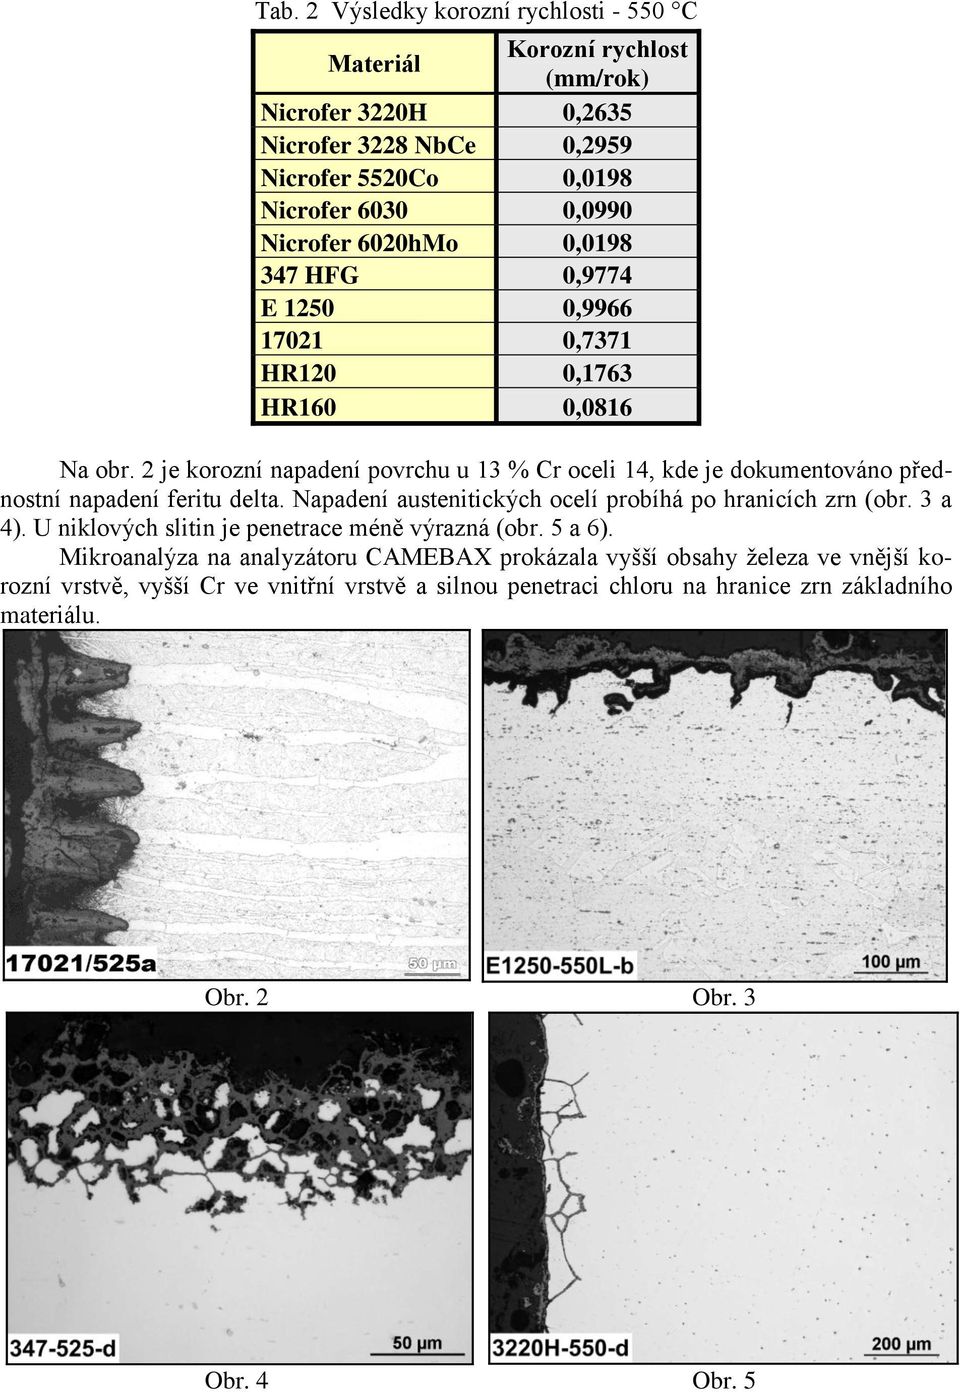 2 je korozní napadení povrchu u 13 % Cr oceli 14, kde je dokumentováno přednostní napadení feritu delta. Napadení austenitických ocelí probíhá po hranicích zrn (obr. 3 a 4).